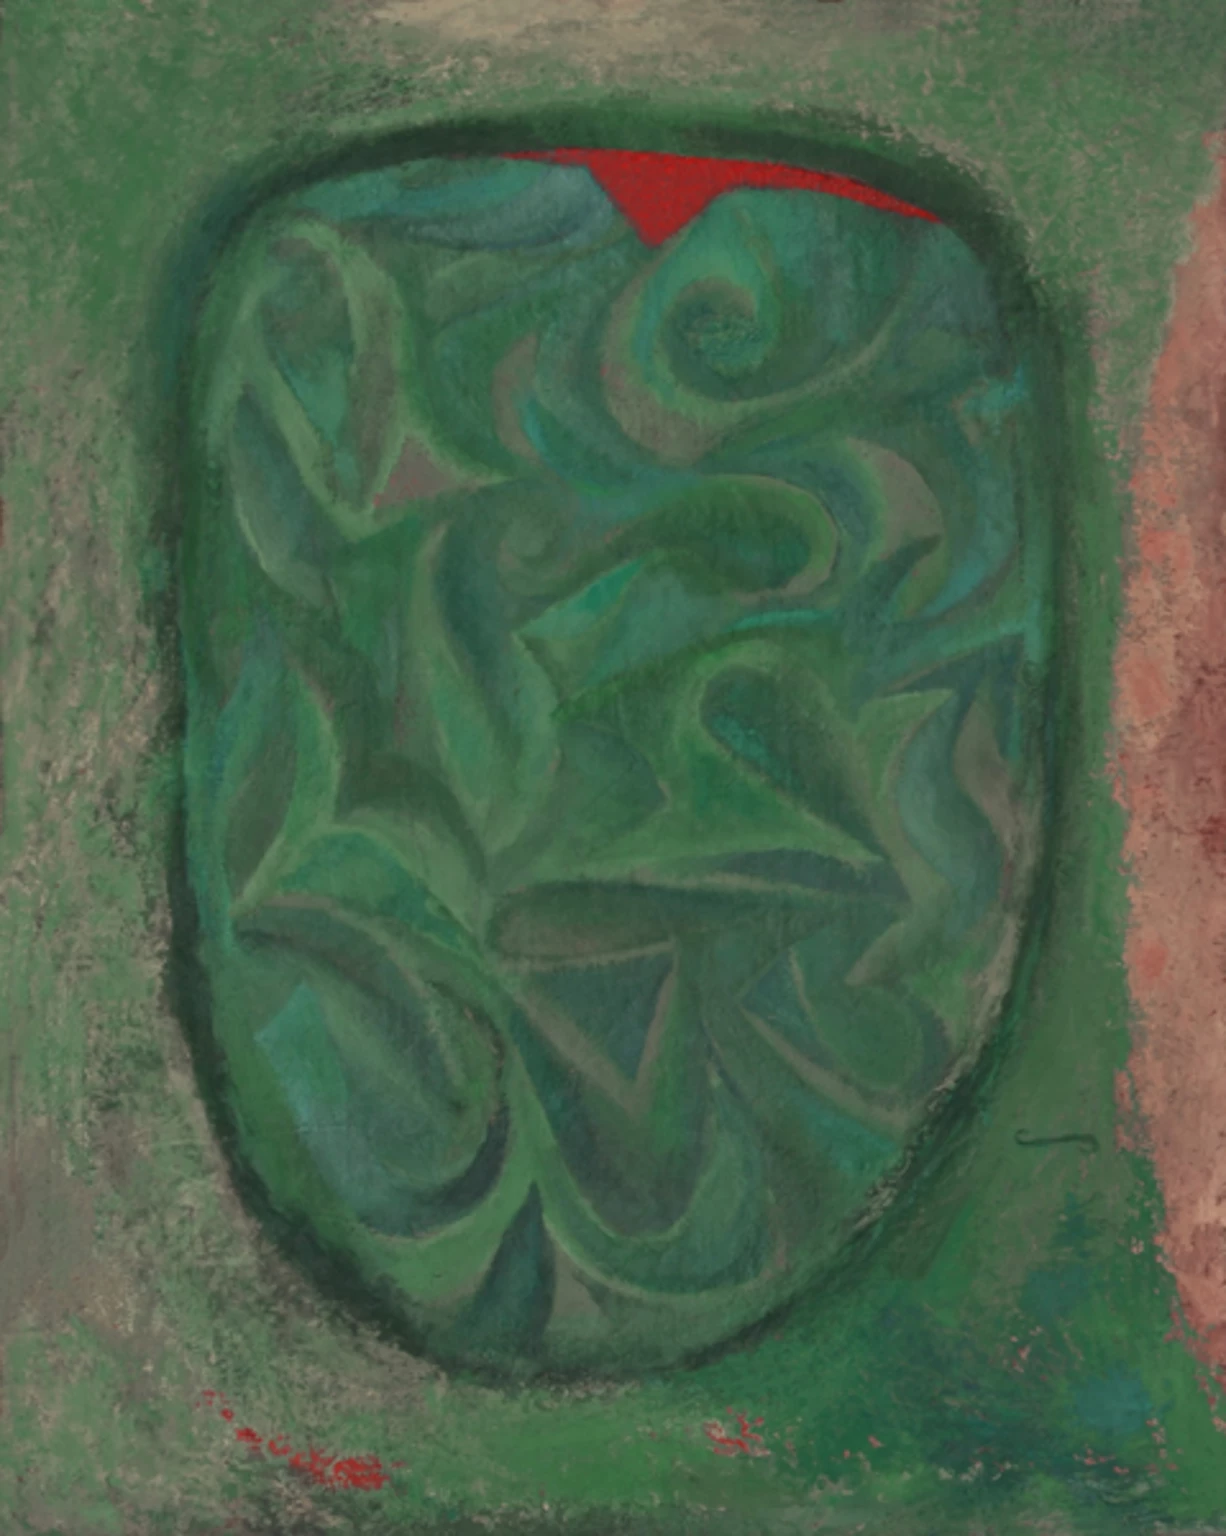 Révült, 1994 - egg tempera, canvas, 100 x 80 cm